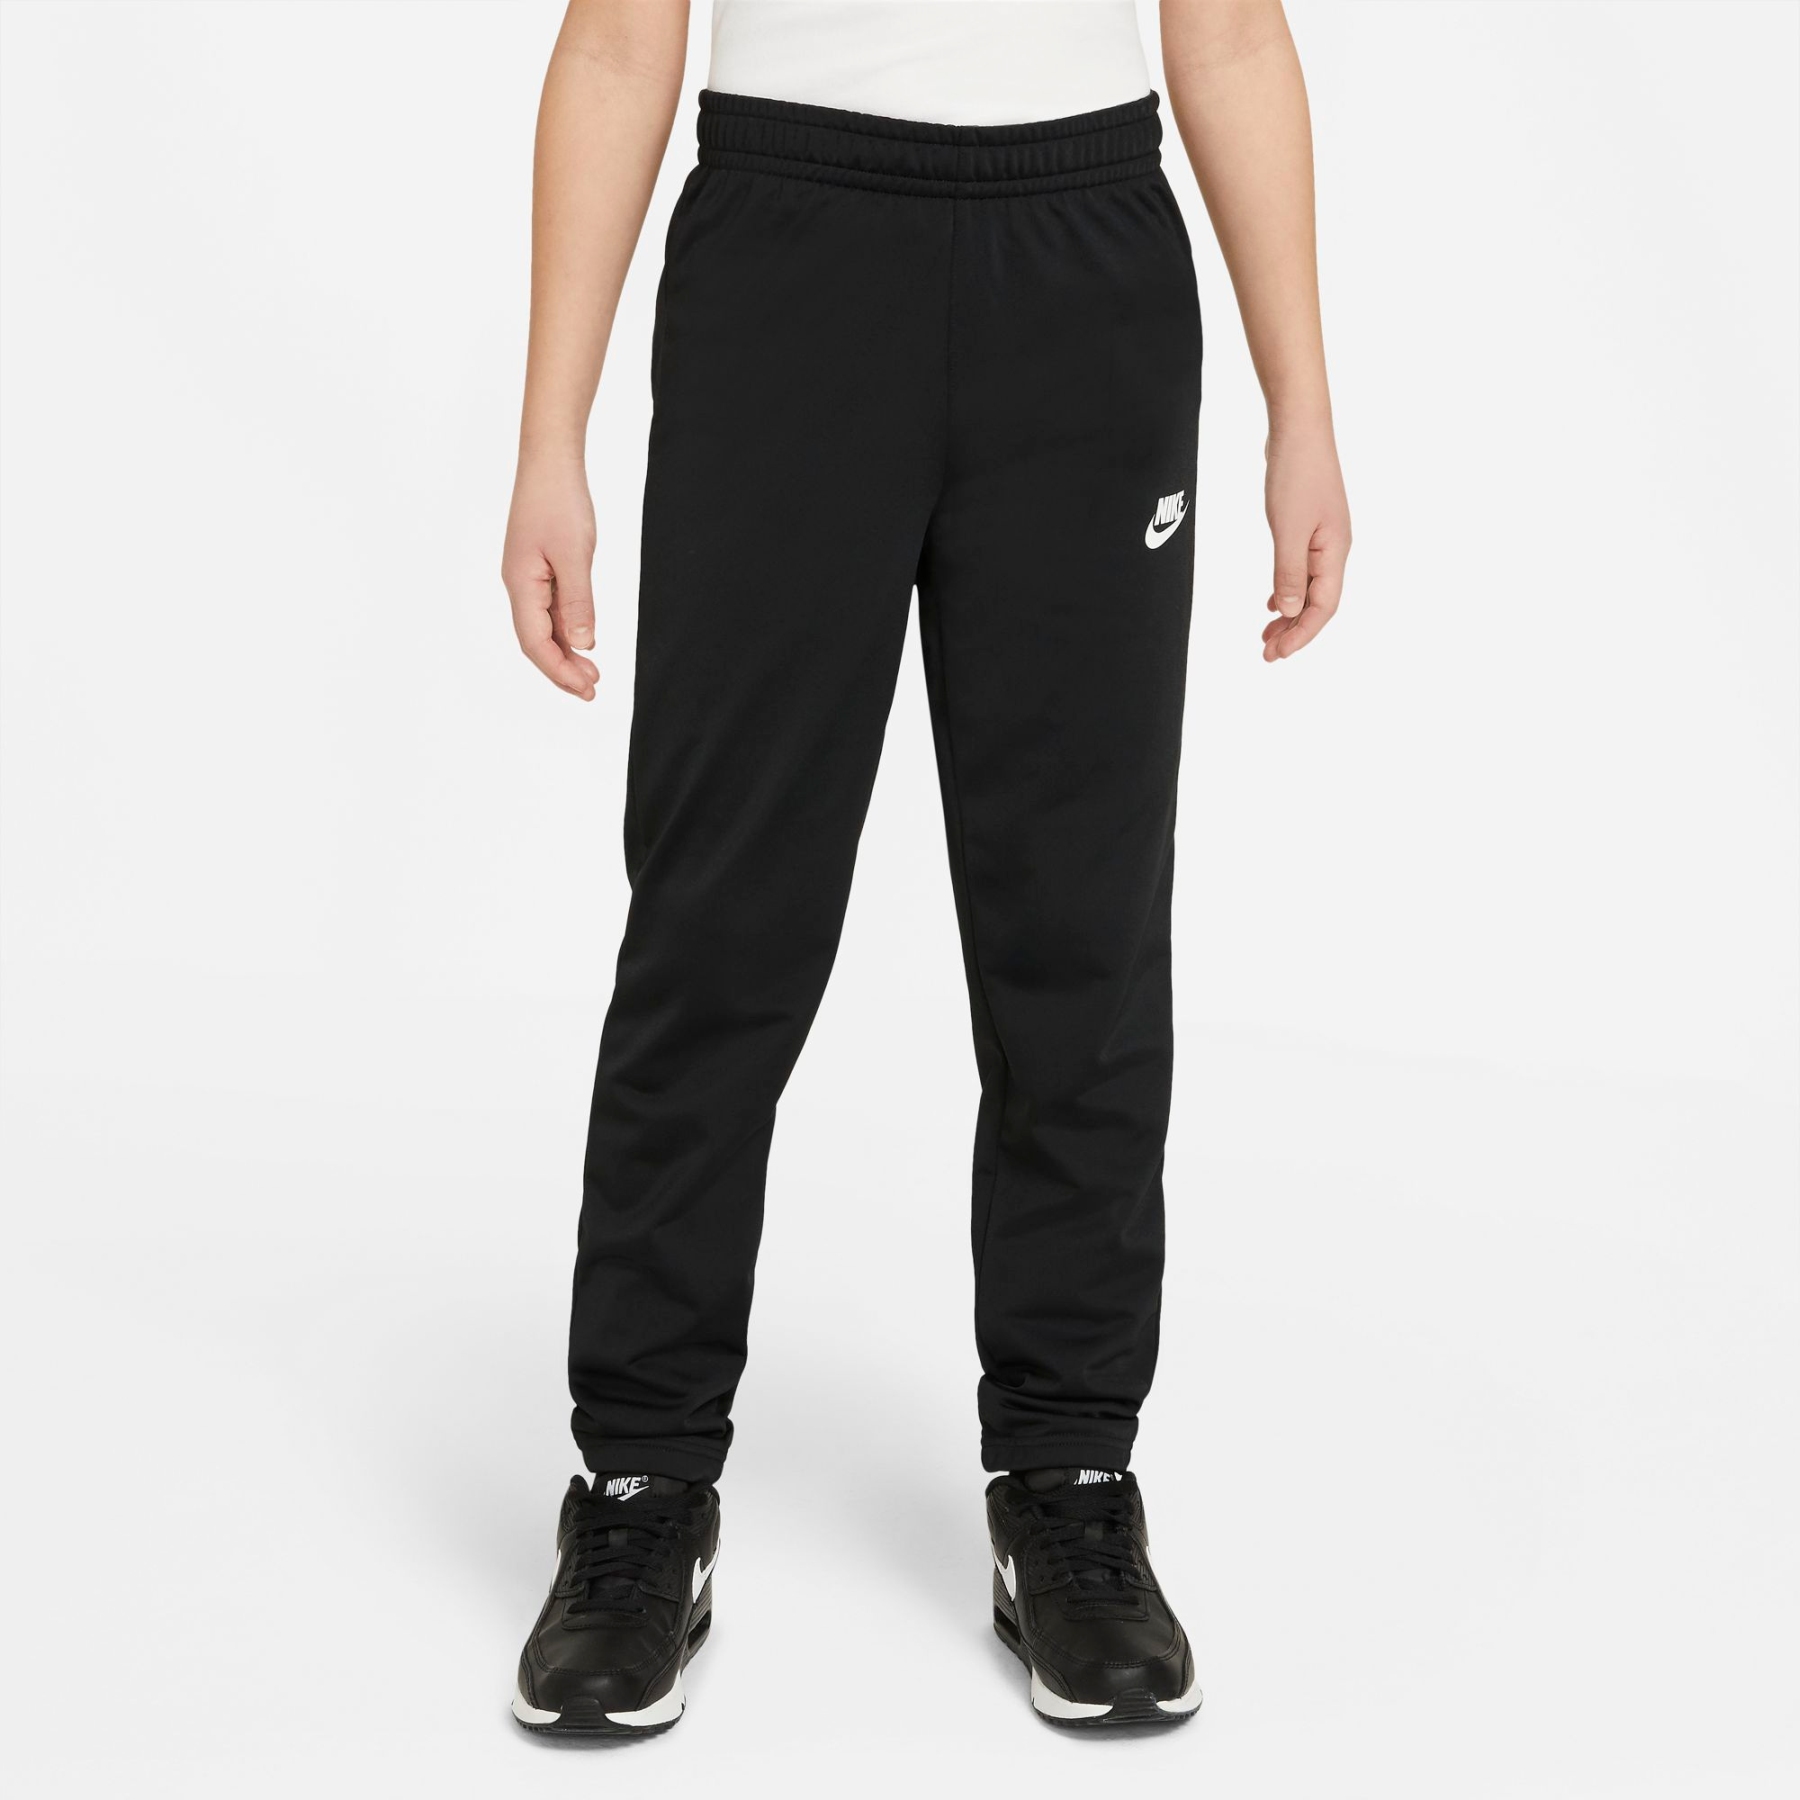 Nike Sportswear Trainingsanzug für ältere Kinder - schwarz/ schwarz/schwarz/weiss DH9661-010